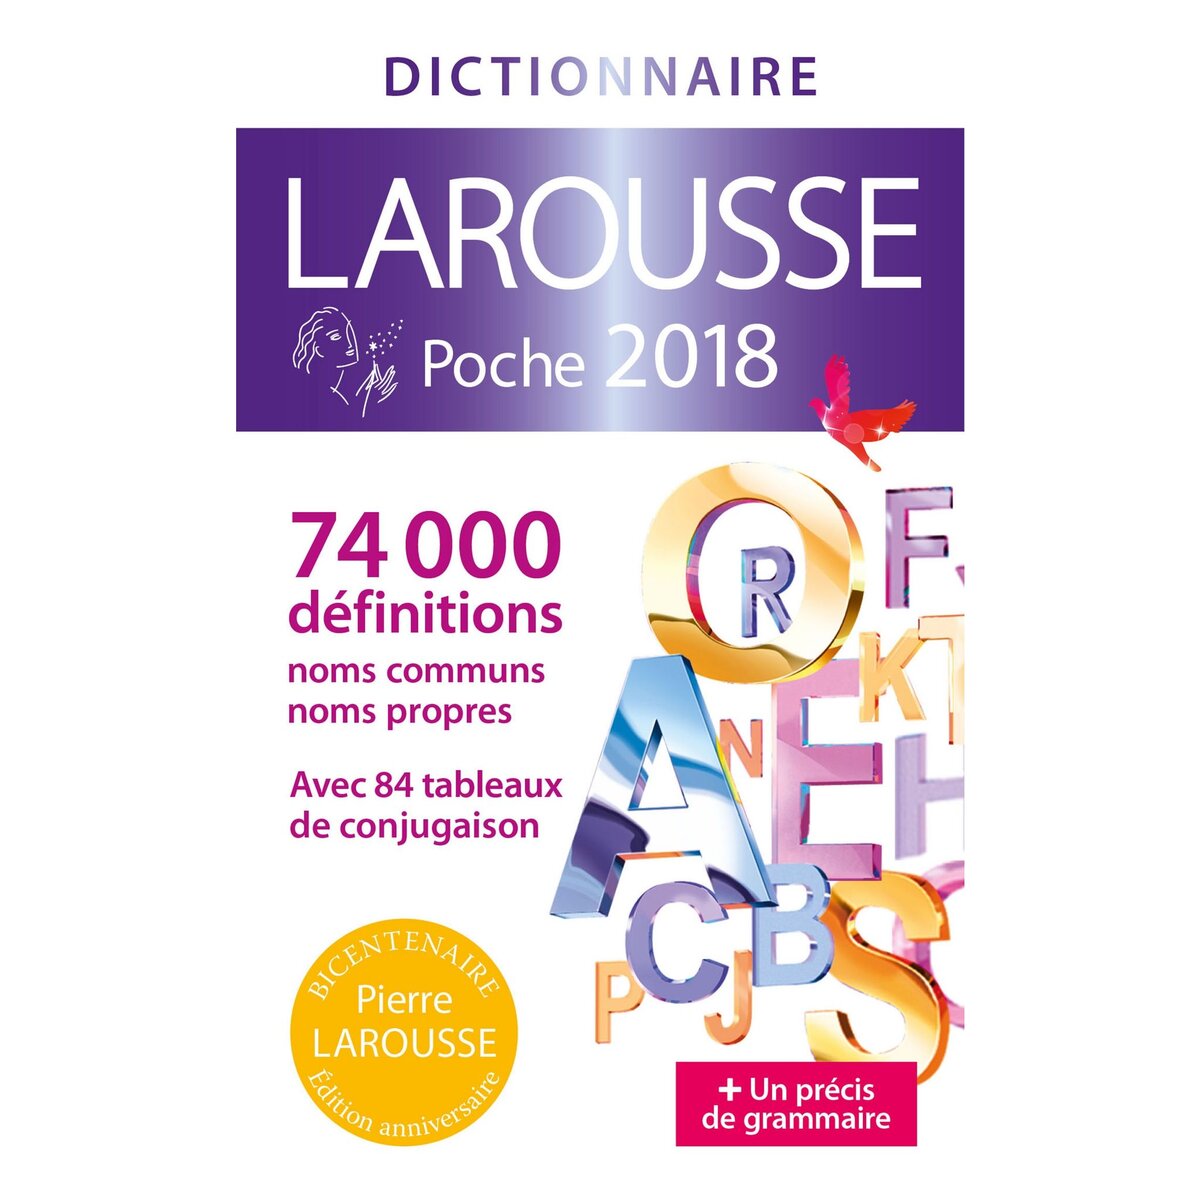 LAROUSSE LAROUSSE DE POCHE 2018